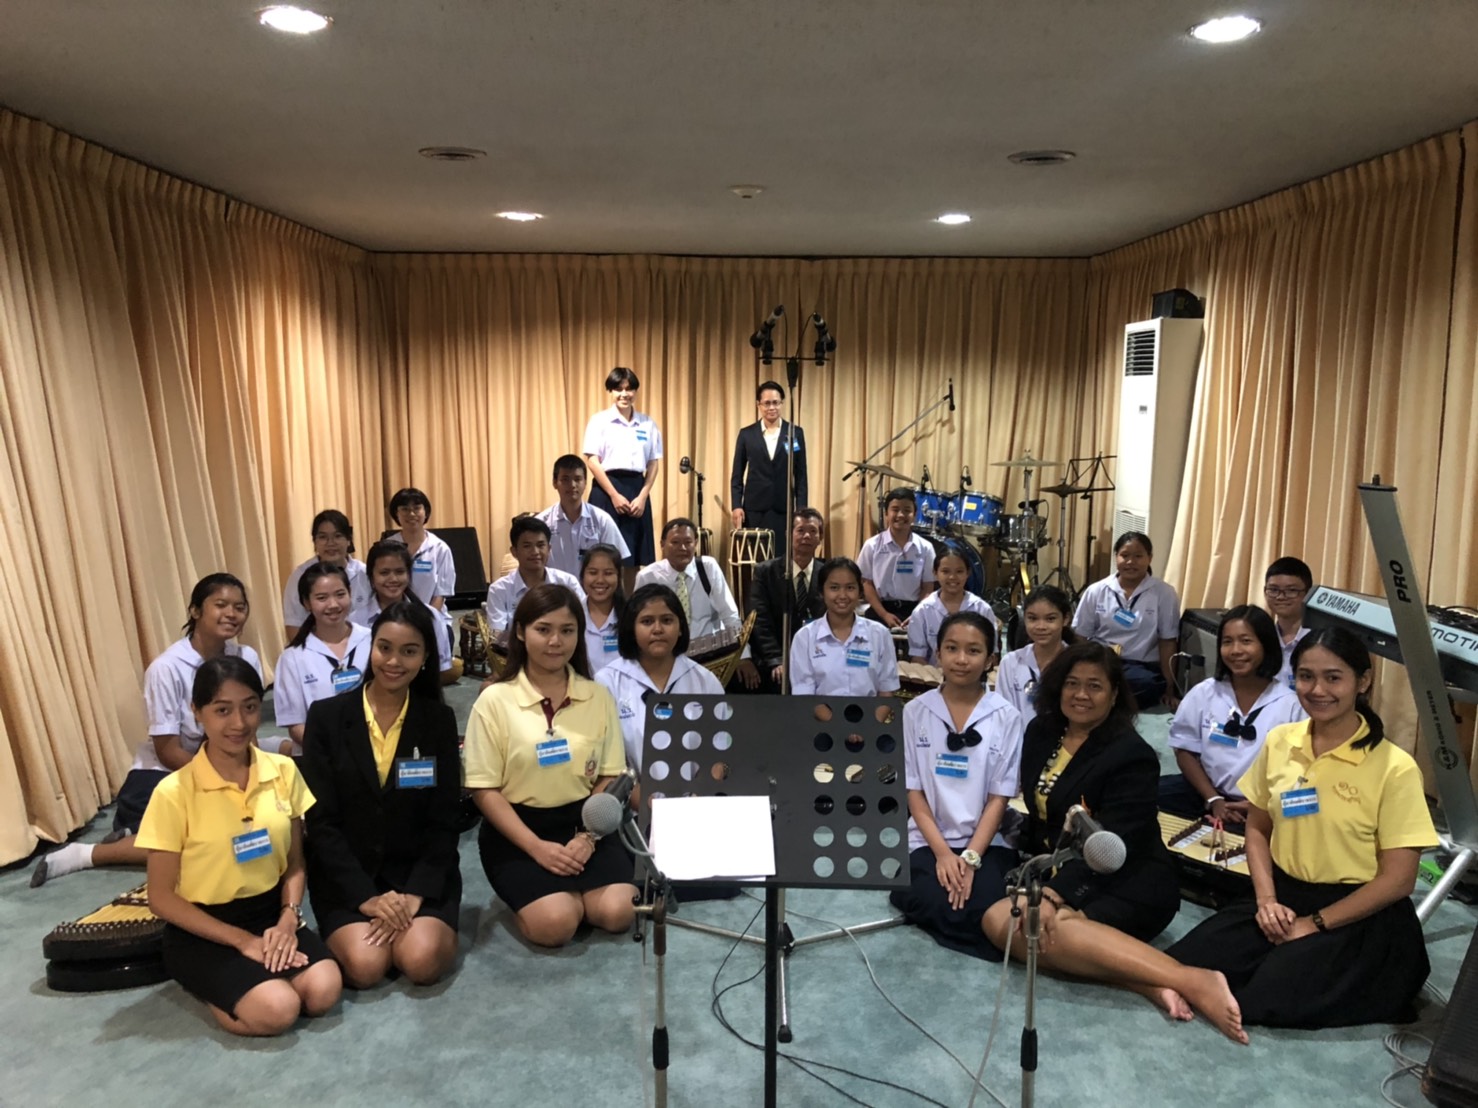 นักเรียนชุมนุมดนตรีไทยนาฏศิลป์ โรงเรียนมัธยมวัดนายโรง เข้าบันทึกเทปวิทยุกระจายเสียง บรรเลงดนตรีไทย กล่าวบทอศิรวาทถวายพระพร เนื่องในโอกาสวัน​เฉลิม​พระ​ชนมพรรษา​พระบาทสมเด็จ​พระเจ้าอยู่หัว